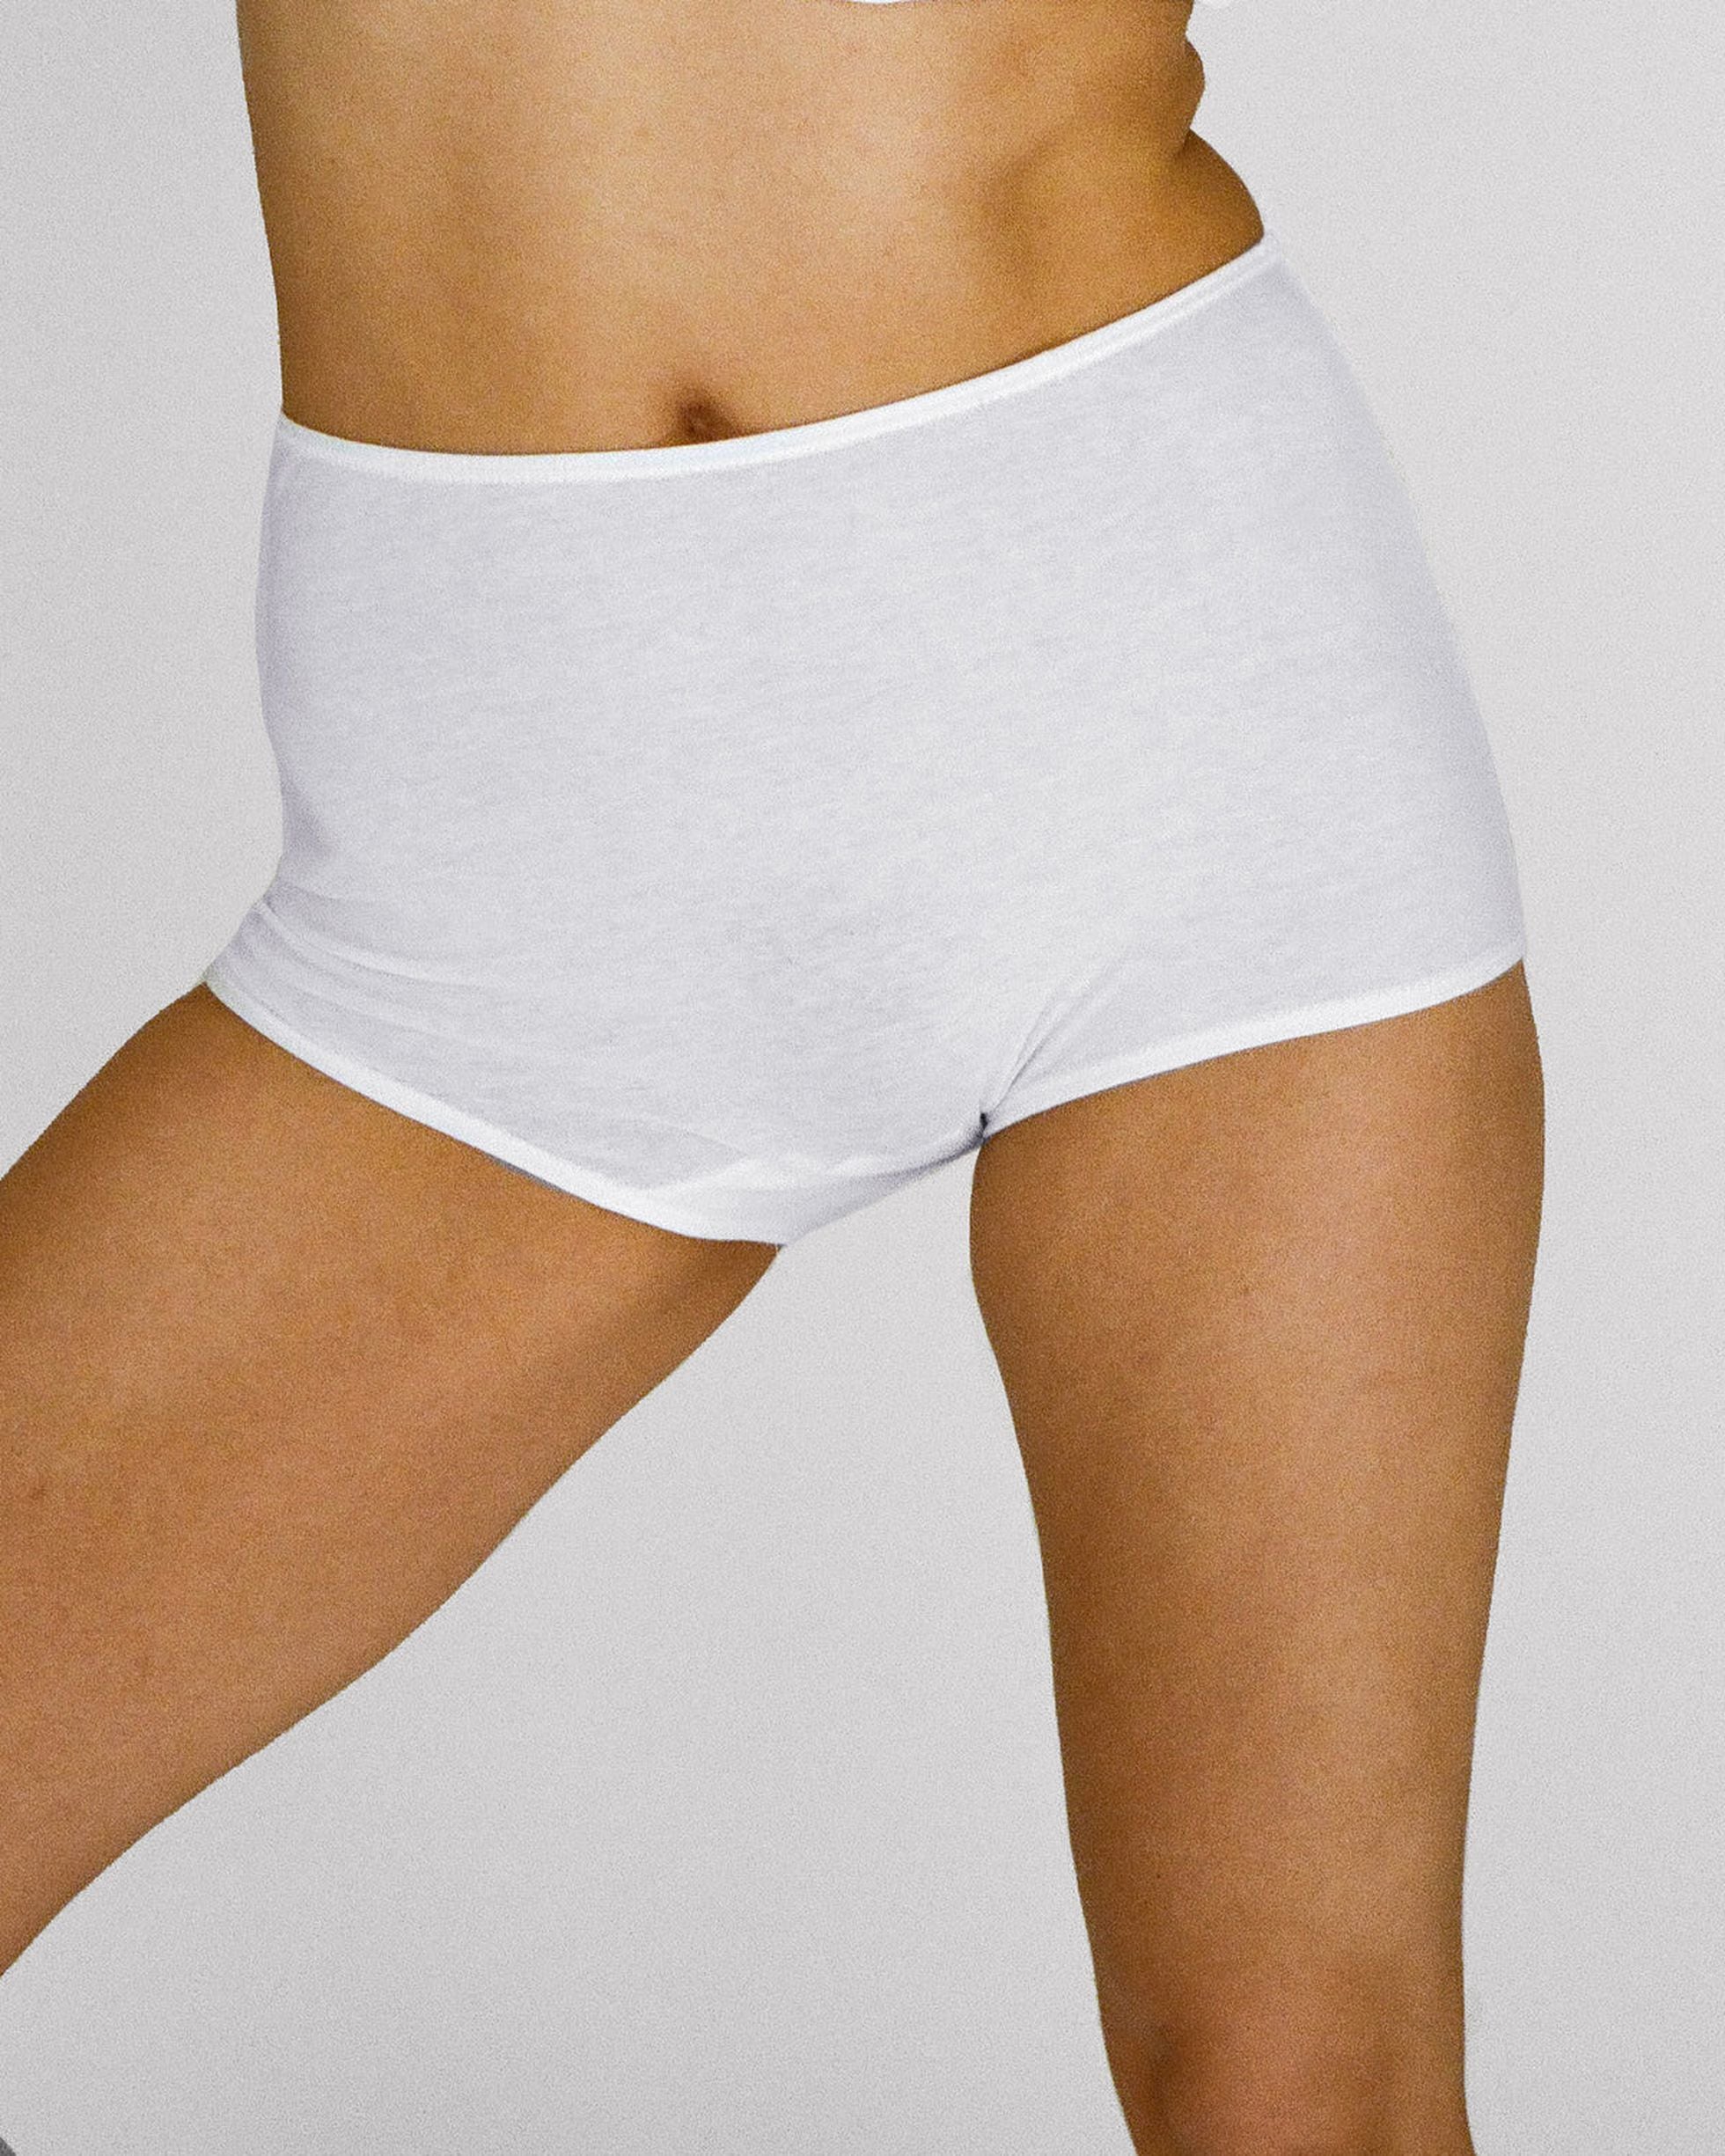 LEEy-world Cotton Underwear for Women High Waist Leakproof